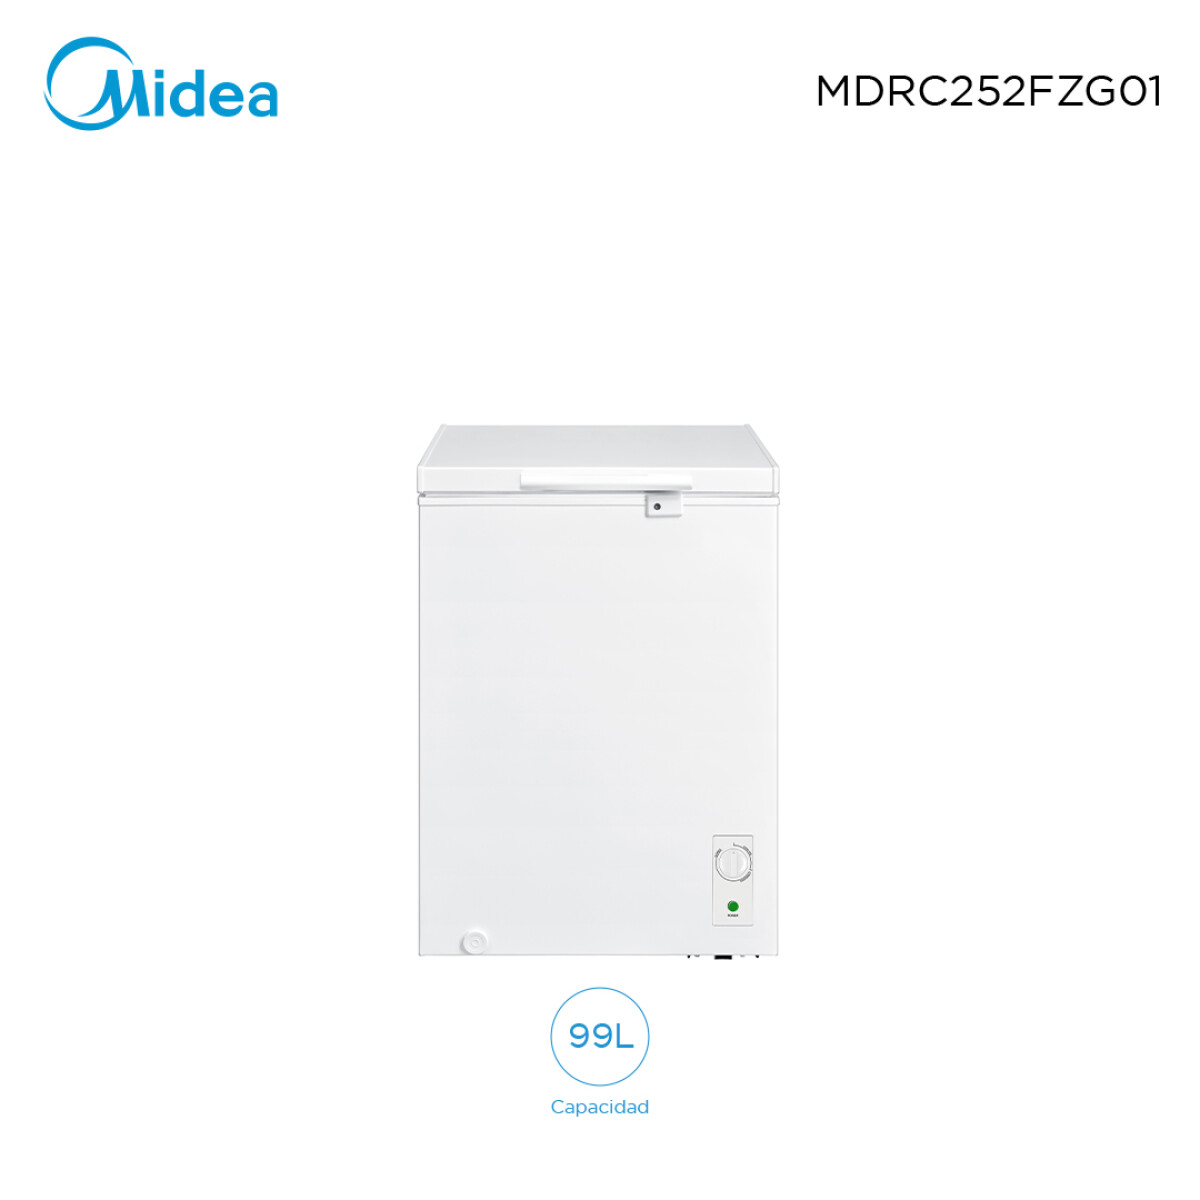 Freezer 99L Midea MDRC252FZG01 - 001 